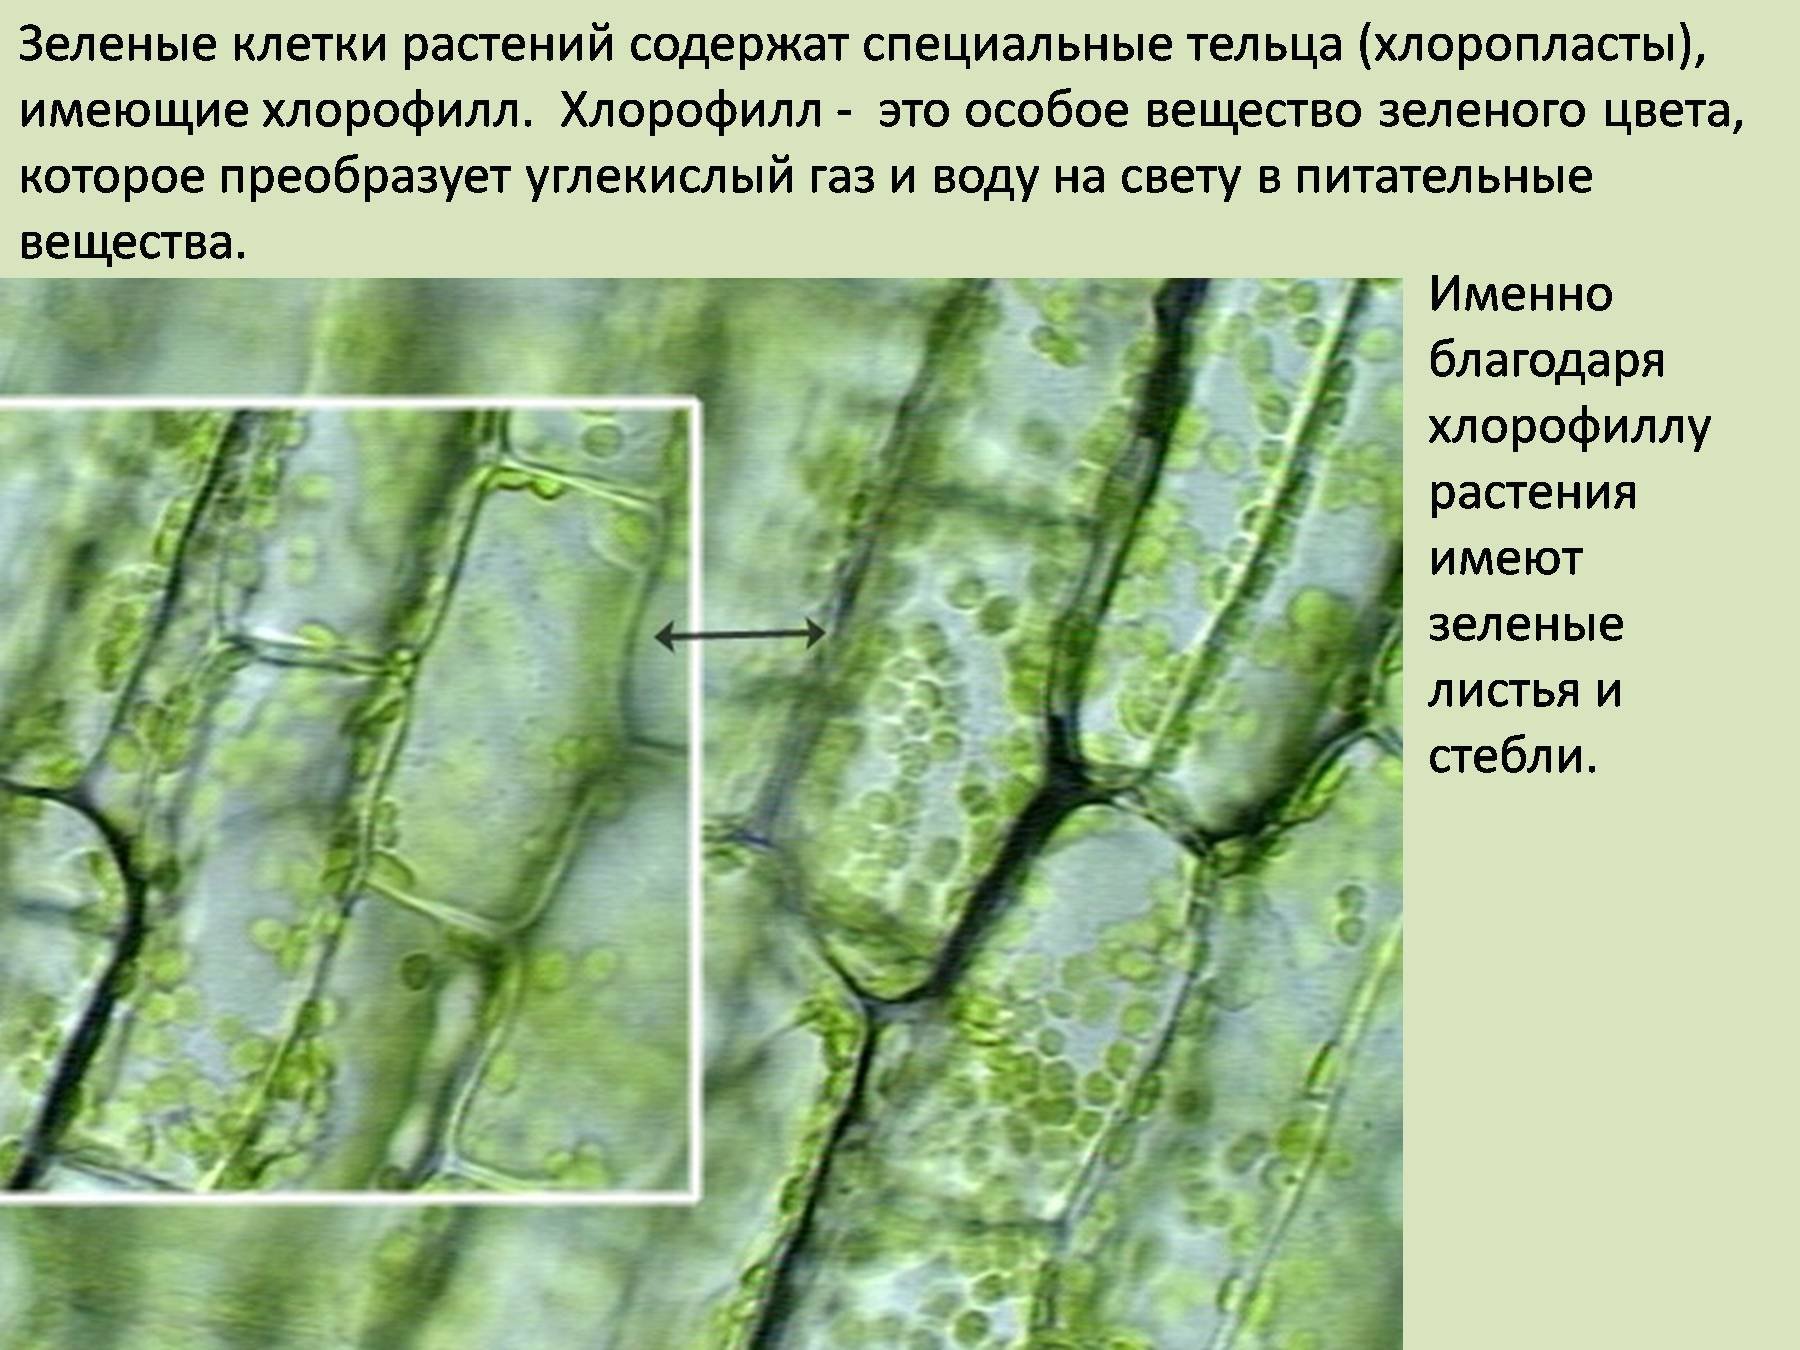 Особое вещество зеленого цвета в растениях. Хлоропласты элодеи. Клетка листа хлоропласты хлорофилл. Хлорофилл в растительной клетке. Клетка элодеи хлорофилл.